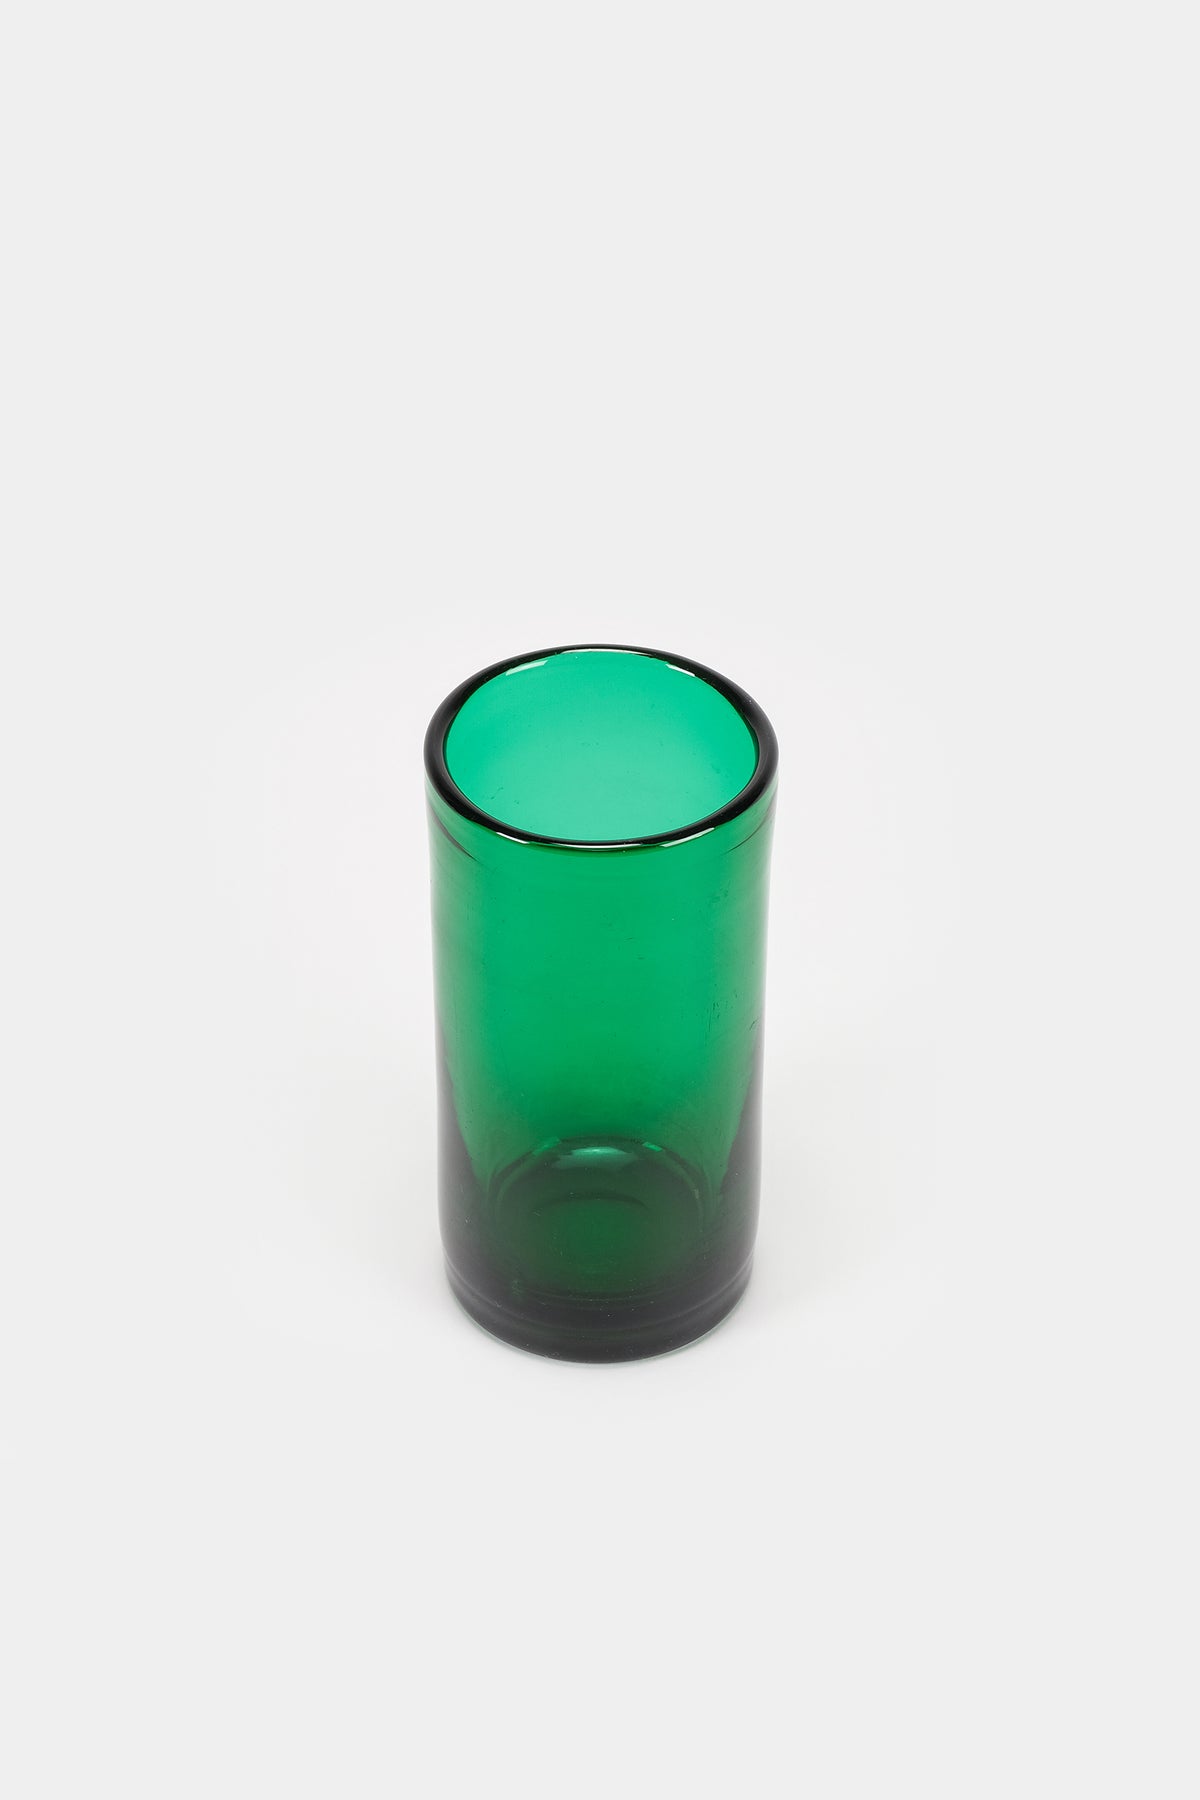 Kleine Vase, Vetro Verde D'Empoli, Italien, 50er